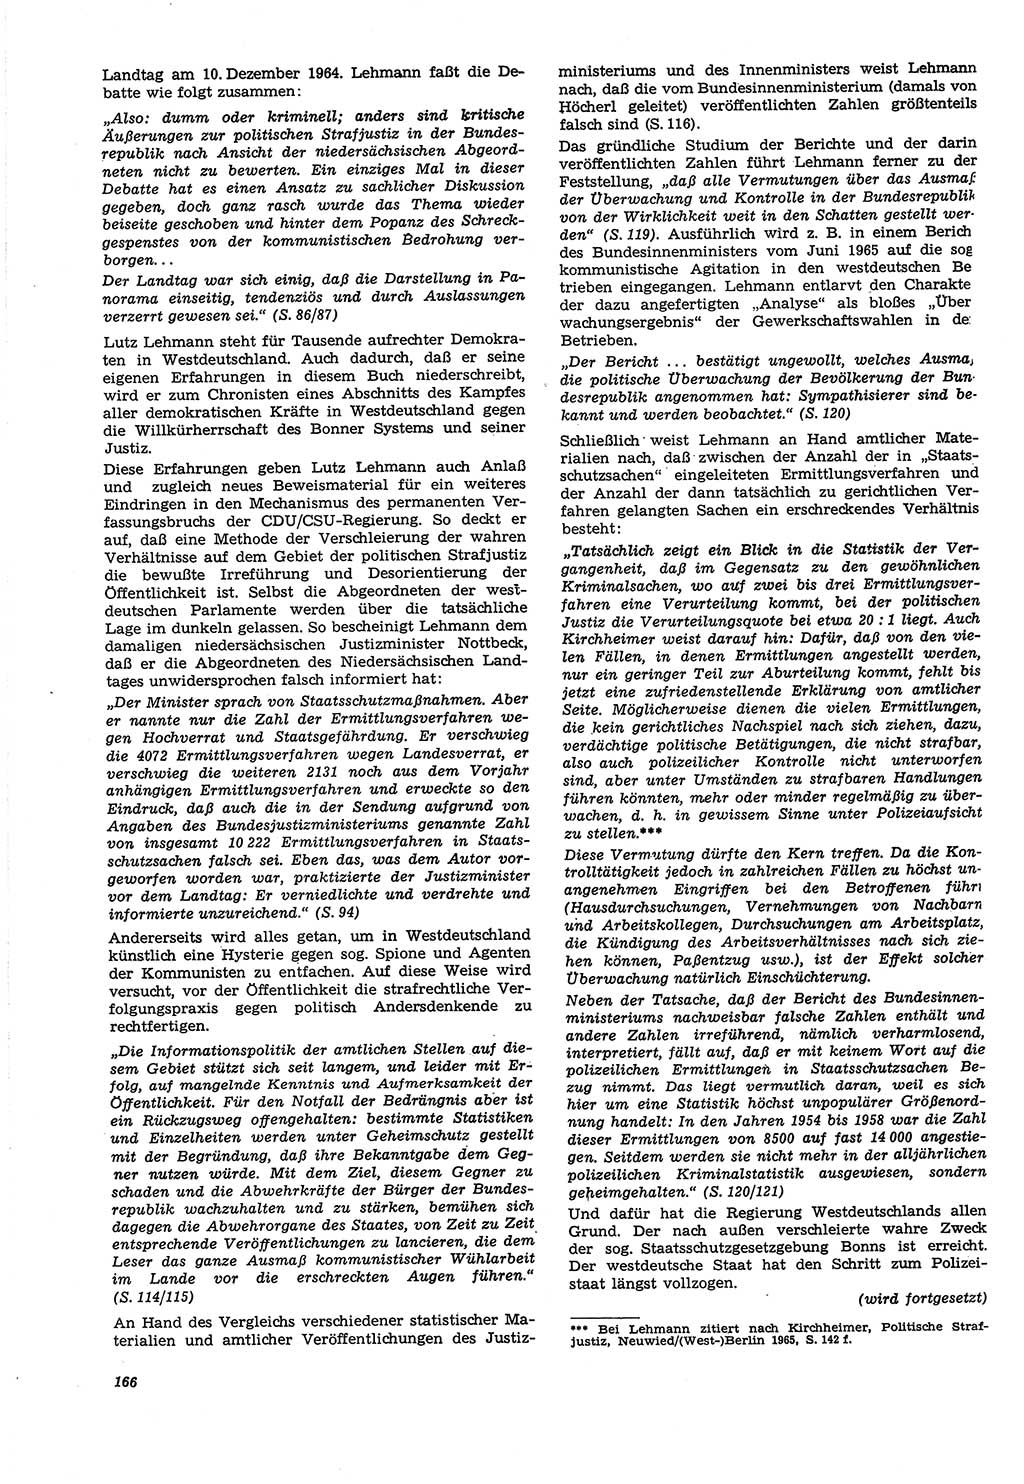 Neue Justiz (NJ), Zeitschrift für Recht und Rechtswissenschaft [Deutsche Demokratische Republik (DDR)], 21. Jahrgang 1967, Seite 166 (NJ DDR 1967, S. 166)